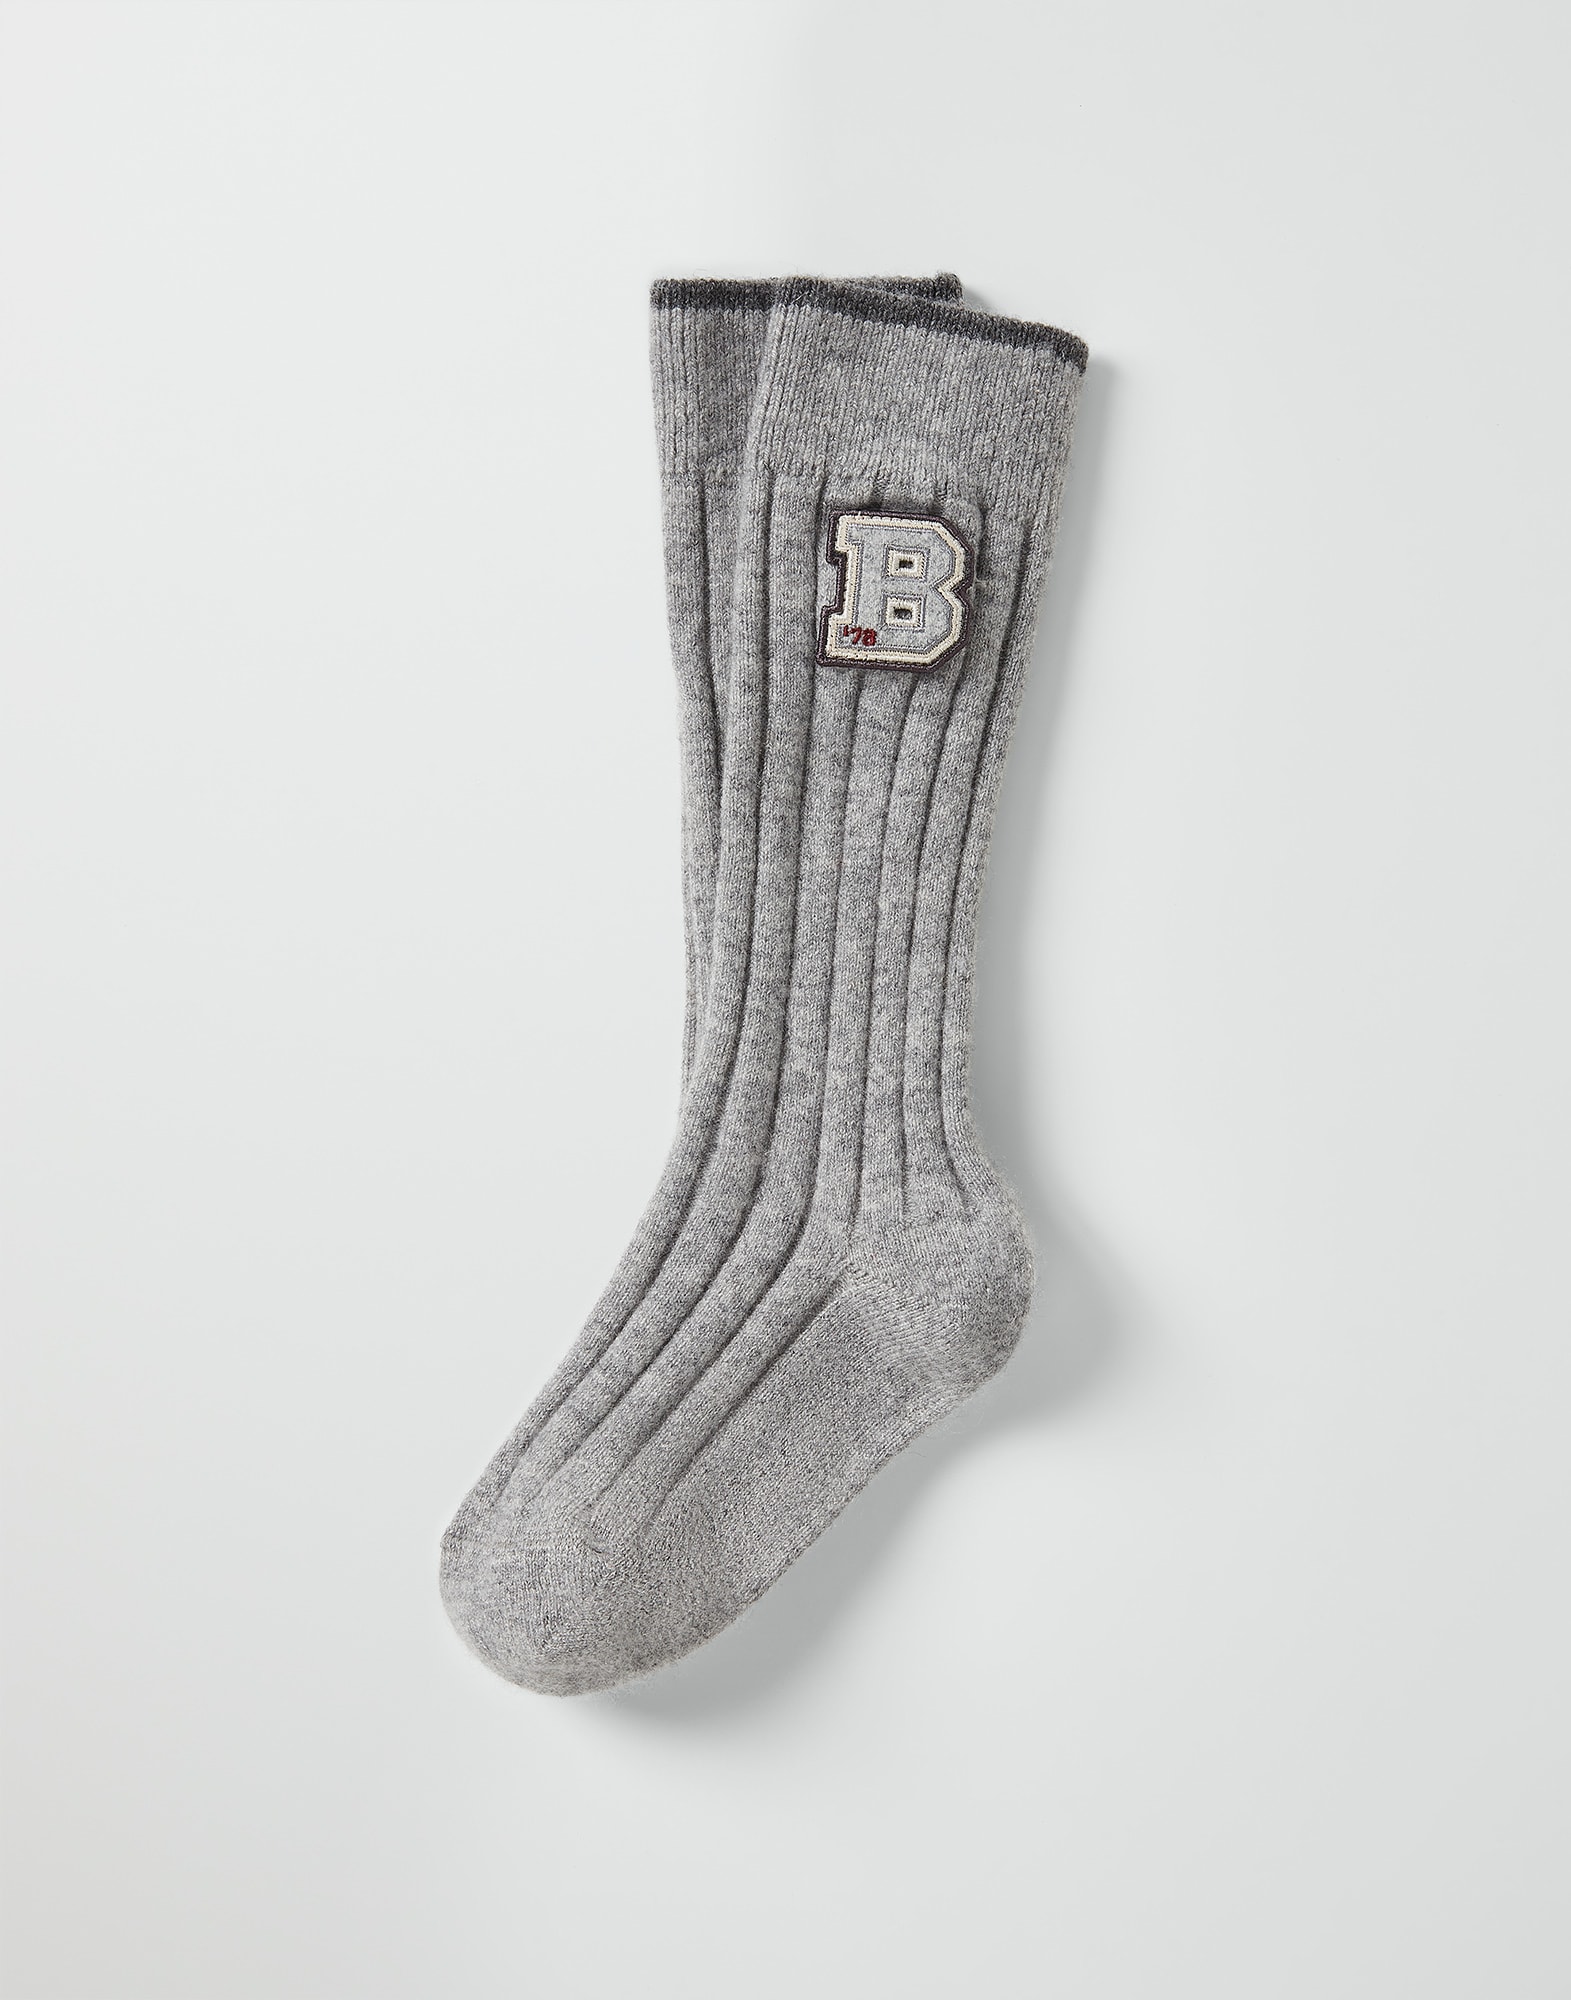 Cashmere knit socks